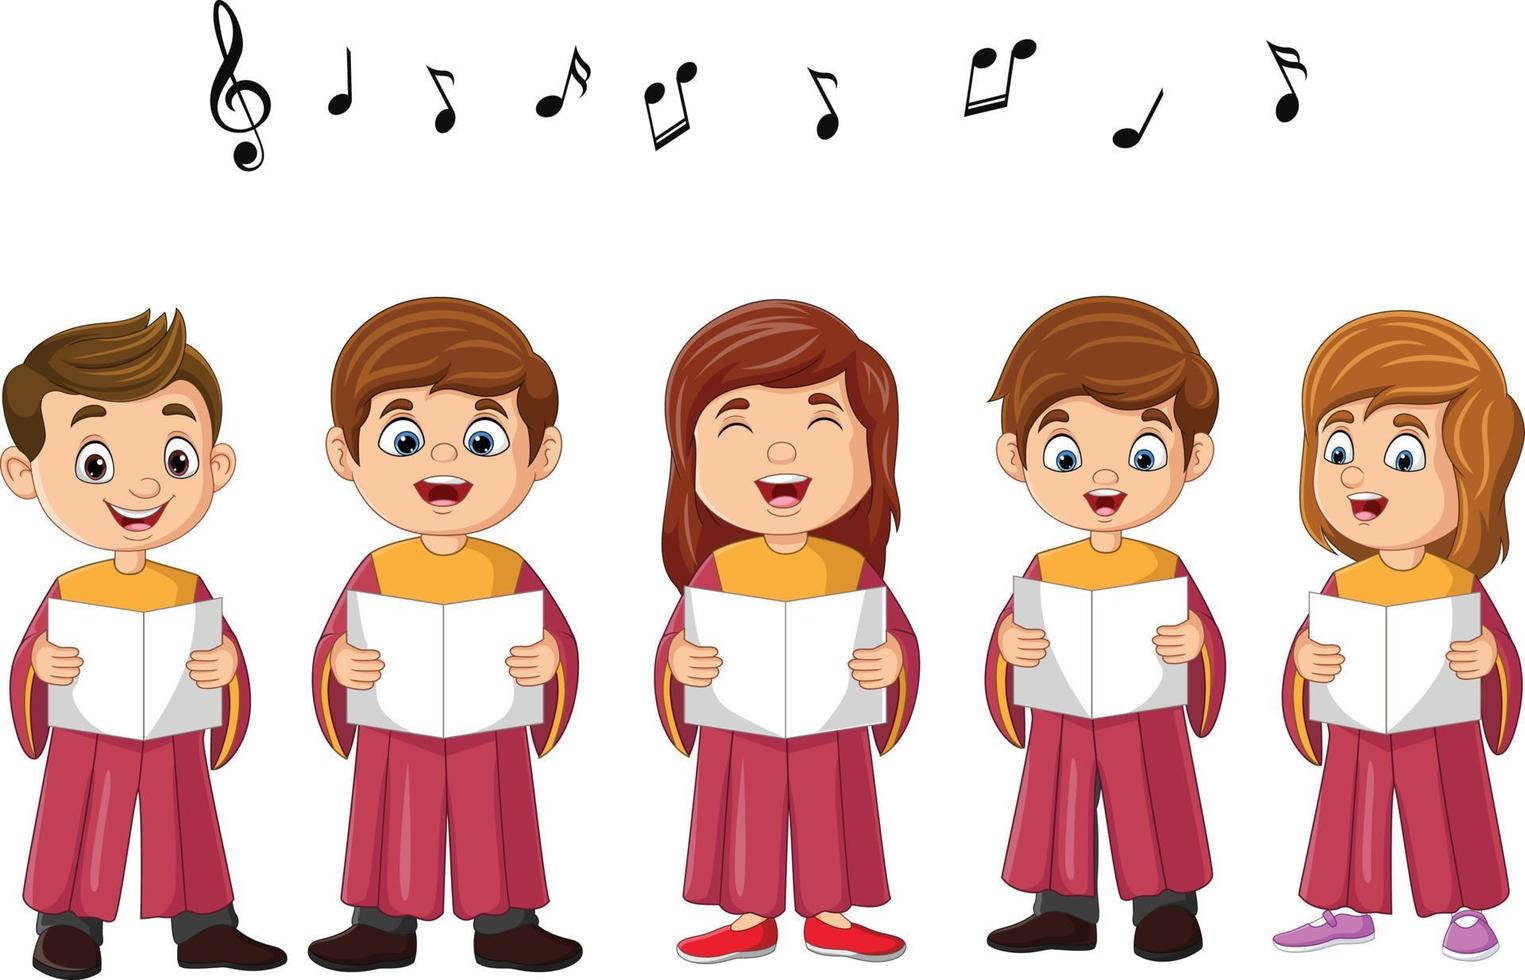 Cartoon choir children singing a song vector